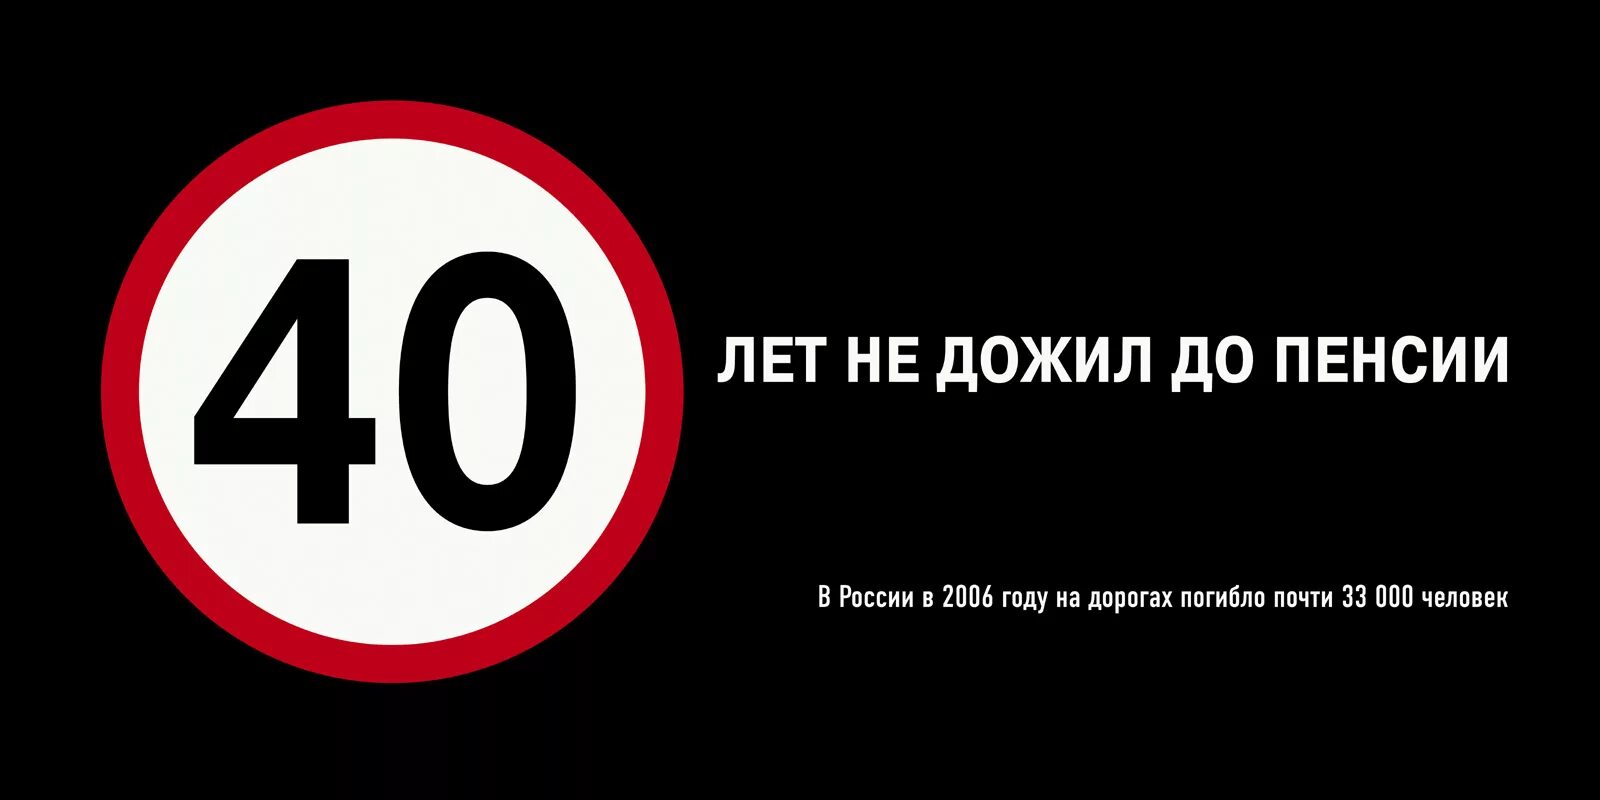 Российская социальная реклама. Социальная реклама в России. Примеры социальной рекламы в России. Соц реклама примеры. Социальная реклама это определение.